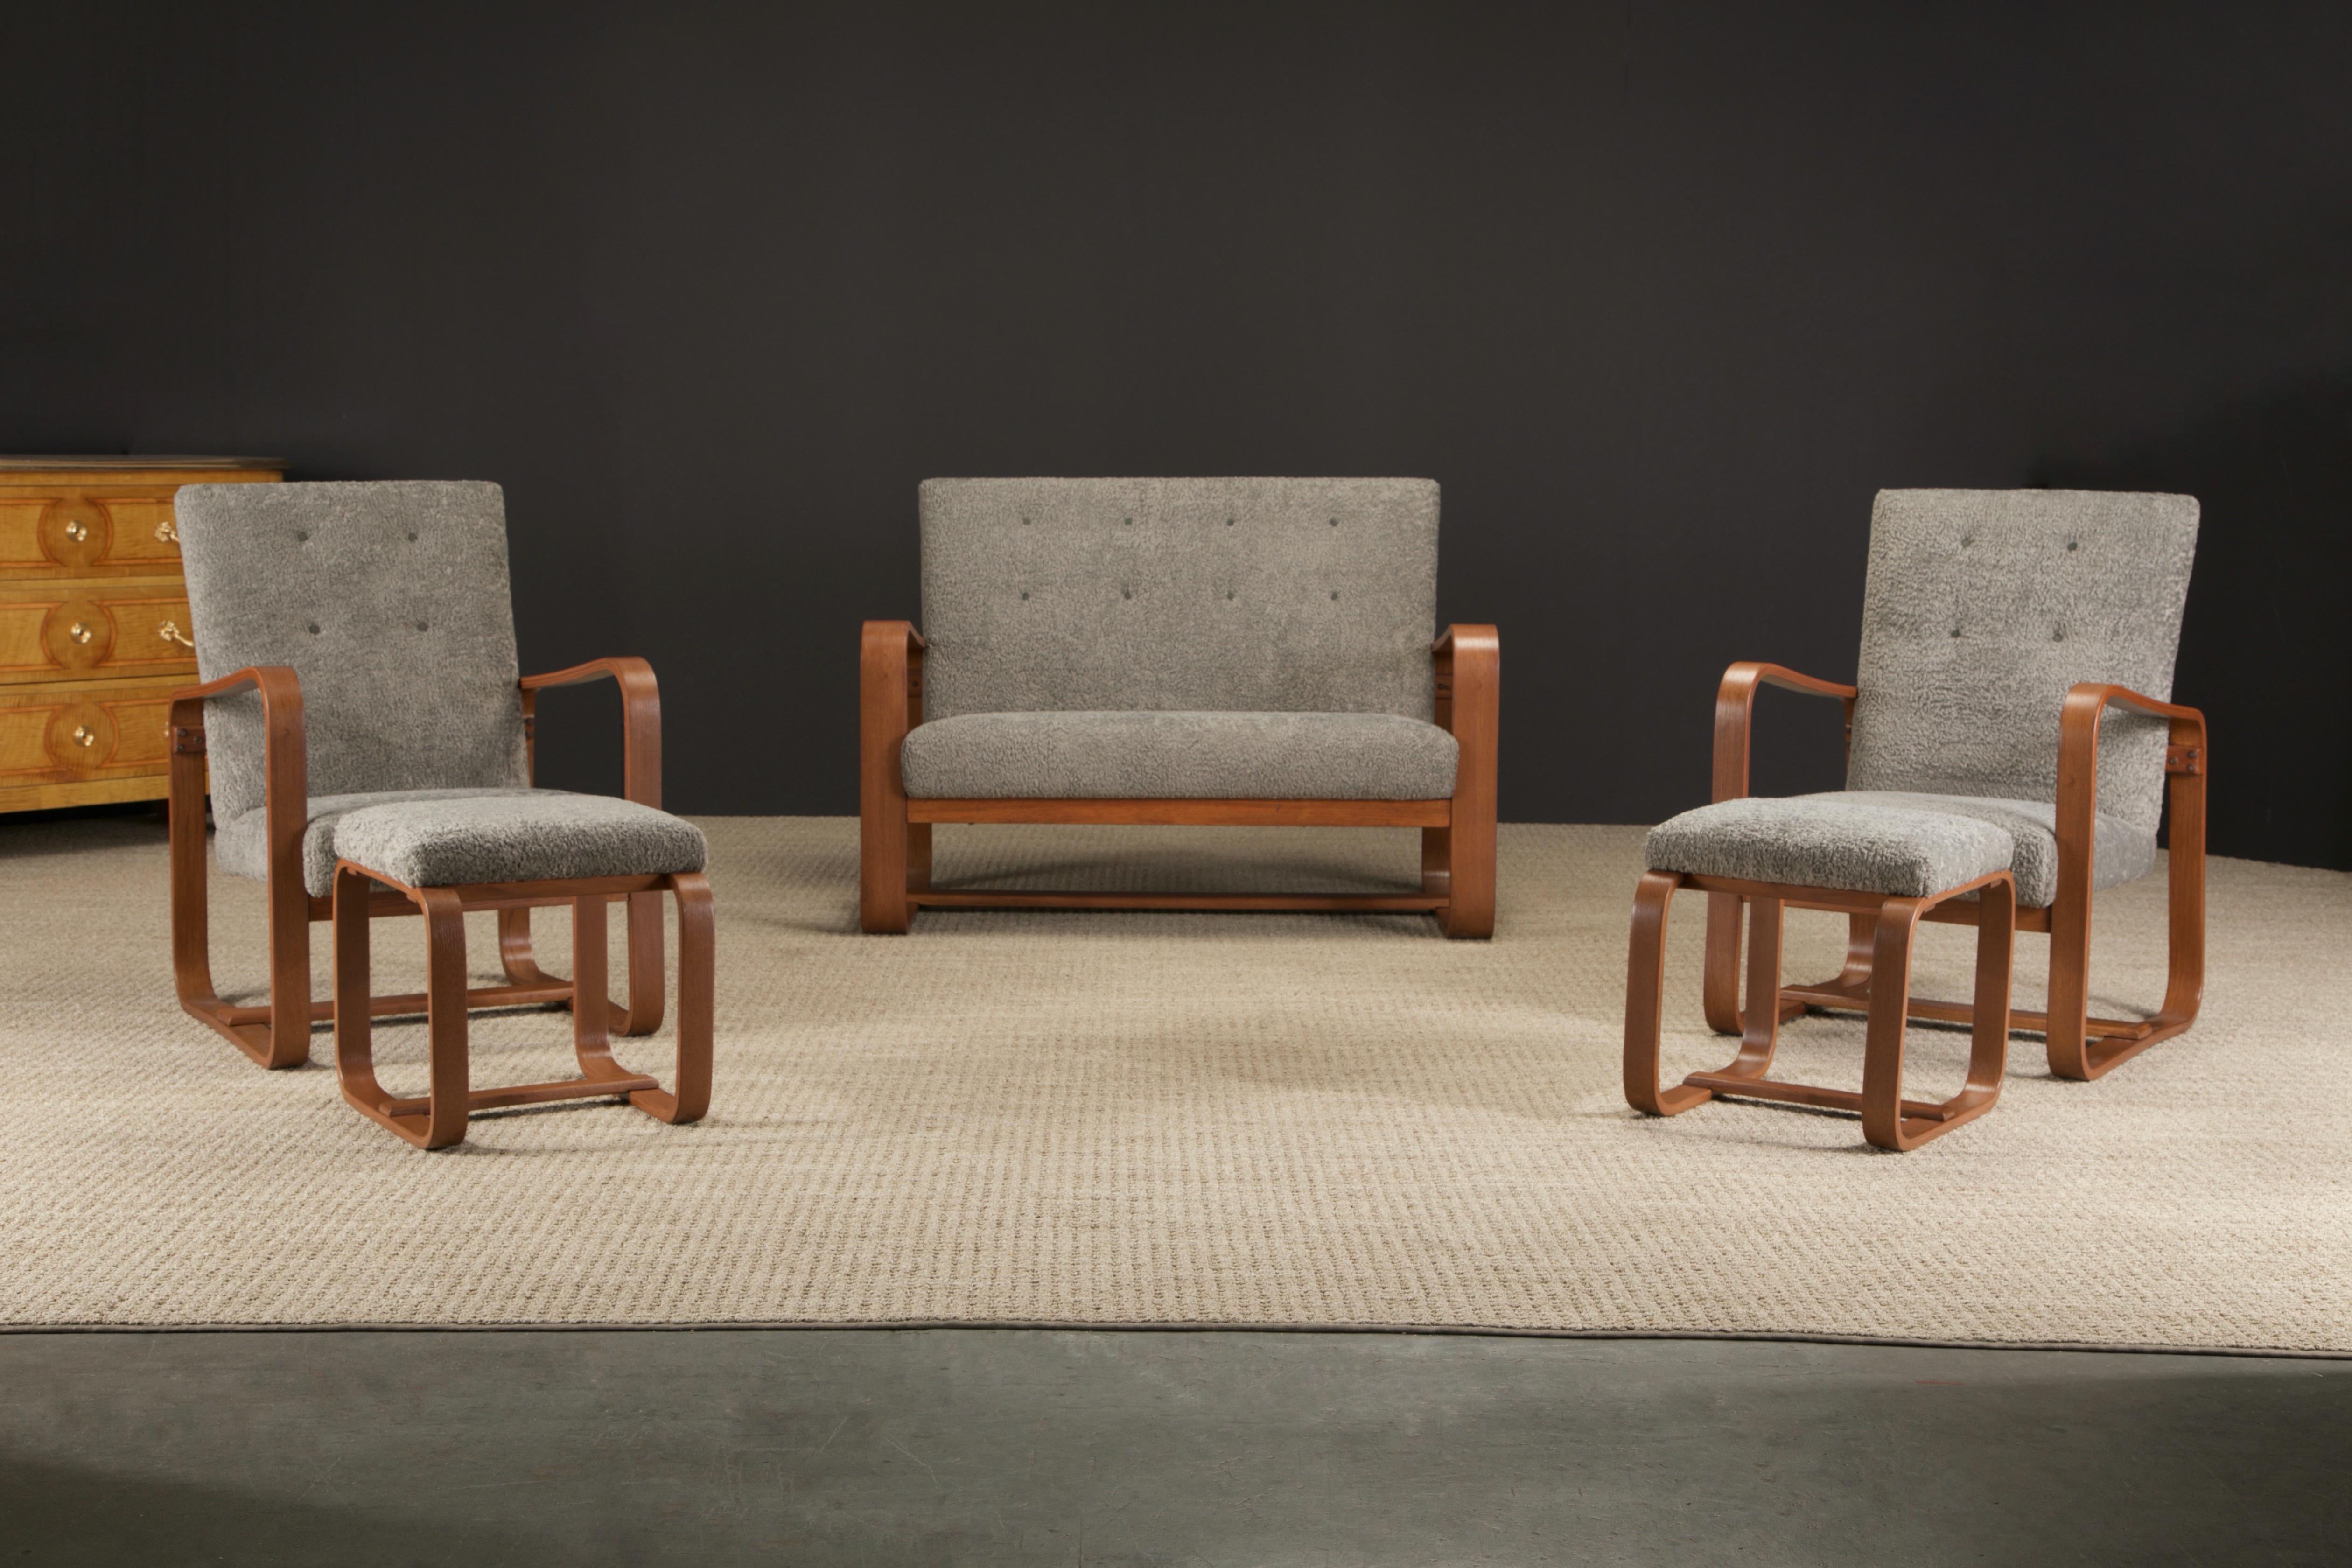 Ce rare ensemble de cinq pièces (5) pour le salon de Giuseppi Pagano, conçu en 1939 pour l'université Bocconi de Milan, comprend deux fauteuils ouverts rembourrés en bois courbé de chêne avec ottomans et un canapé. 

Cet ensemble a été récemment